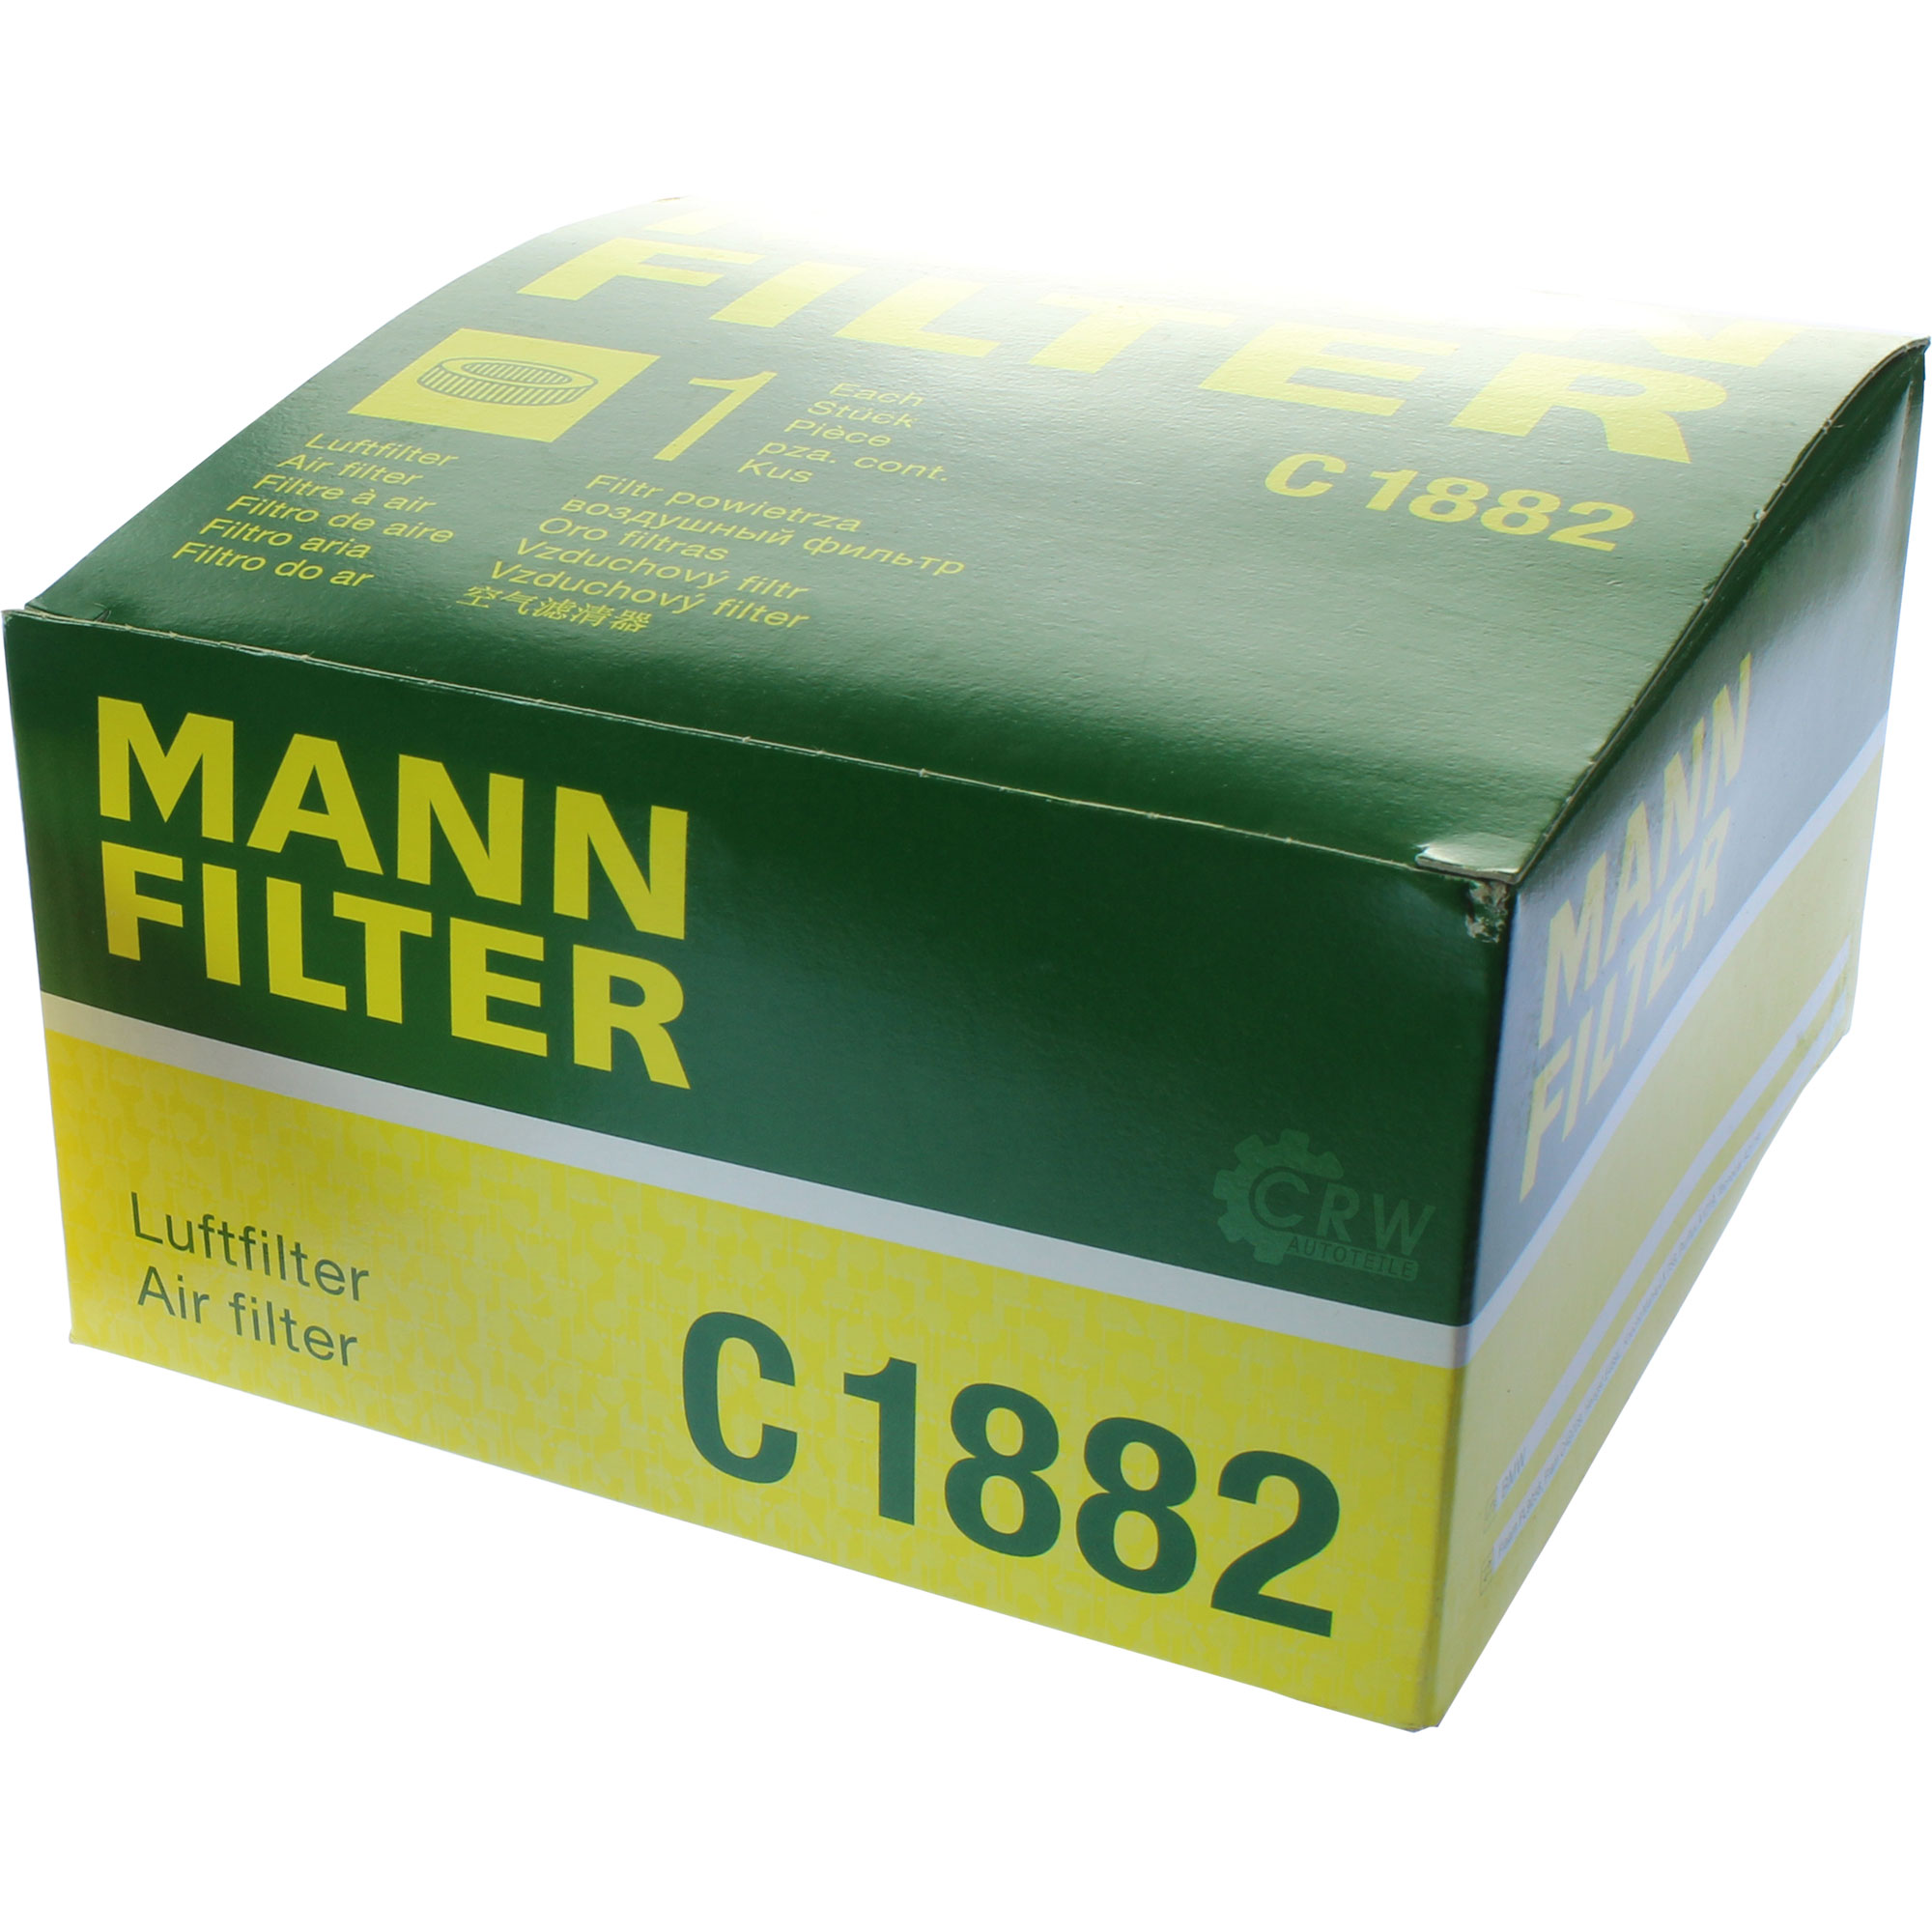 MANN-FILTER Luftfilter für BMW 3er Compact E46 316 TI 318 318i 316i